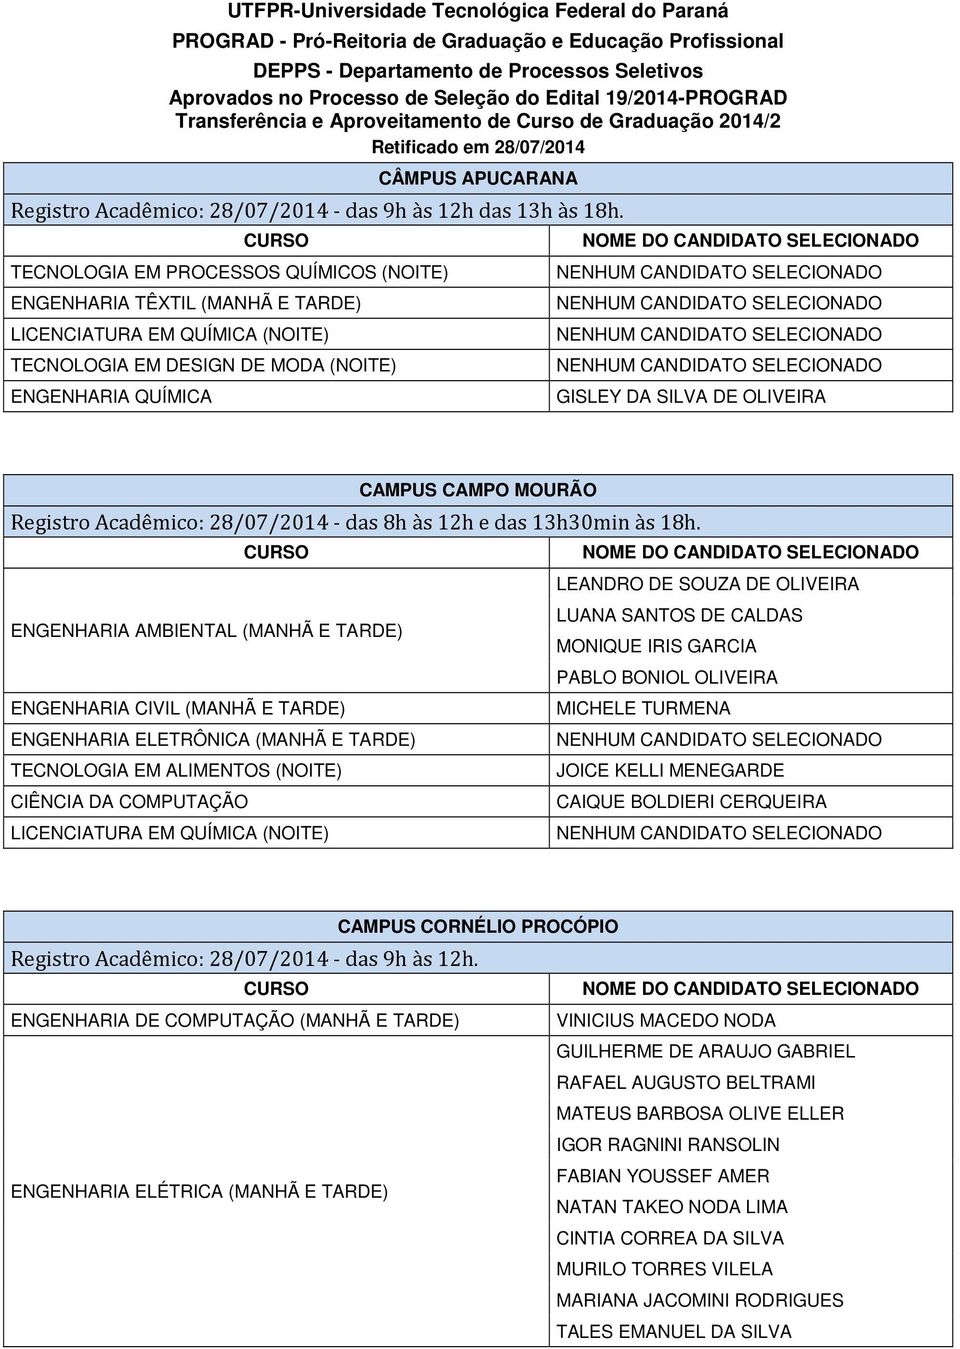 TECNOLOGIA EM PROCESSOS QUÍMICOS (NOITE) ENGENHARIA TÊXTIL (MANHÃ E TARDE) TECNOLOGIA EM DESIGN DE MODA (NOITE) ENGENHARIA QUÍMICA GISLEY DA SILVA DE OLIVEIRA CAMPUS CAMPO MOURÃO Registro Acadêmico: